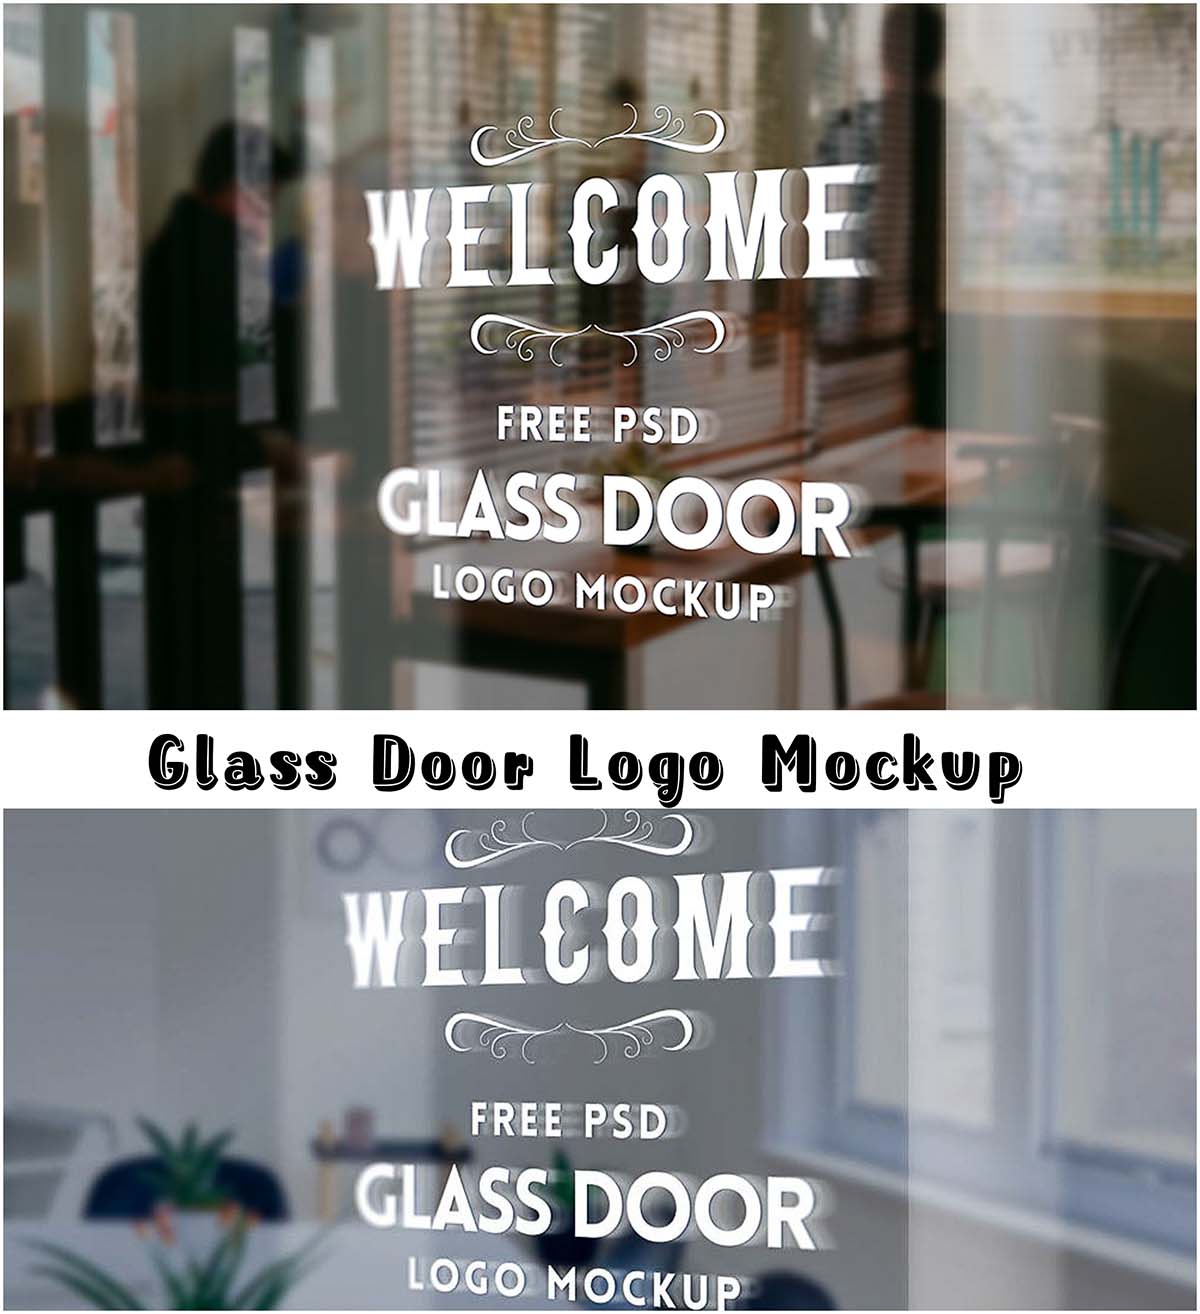 Glass door logo mockup